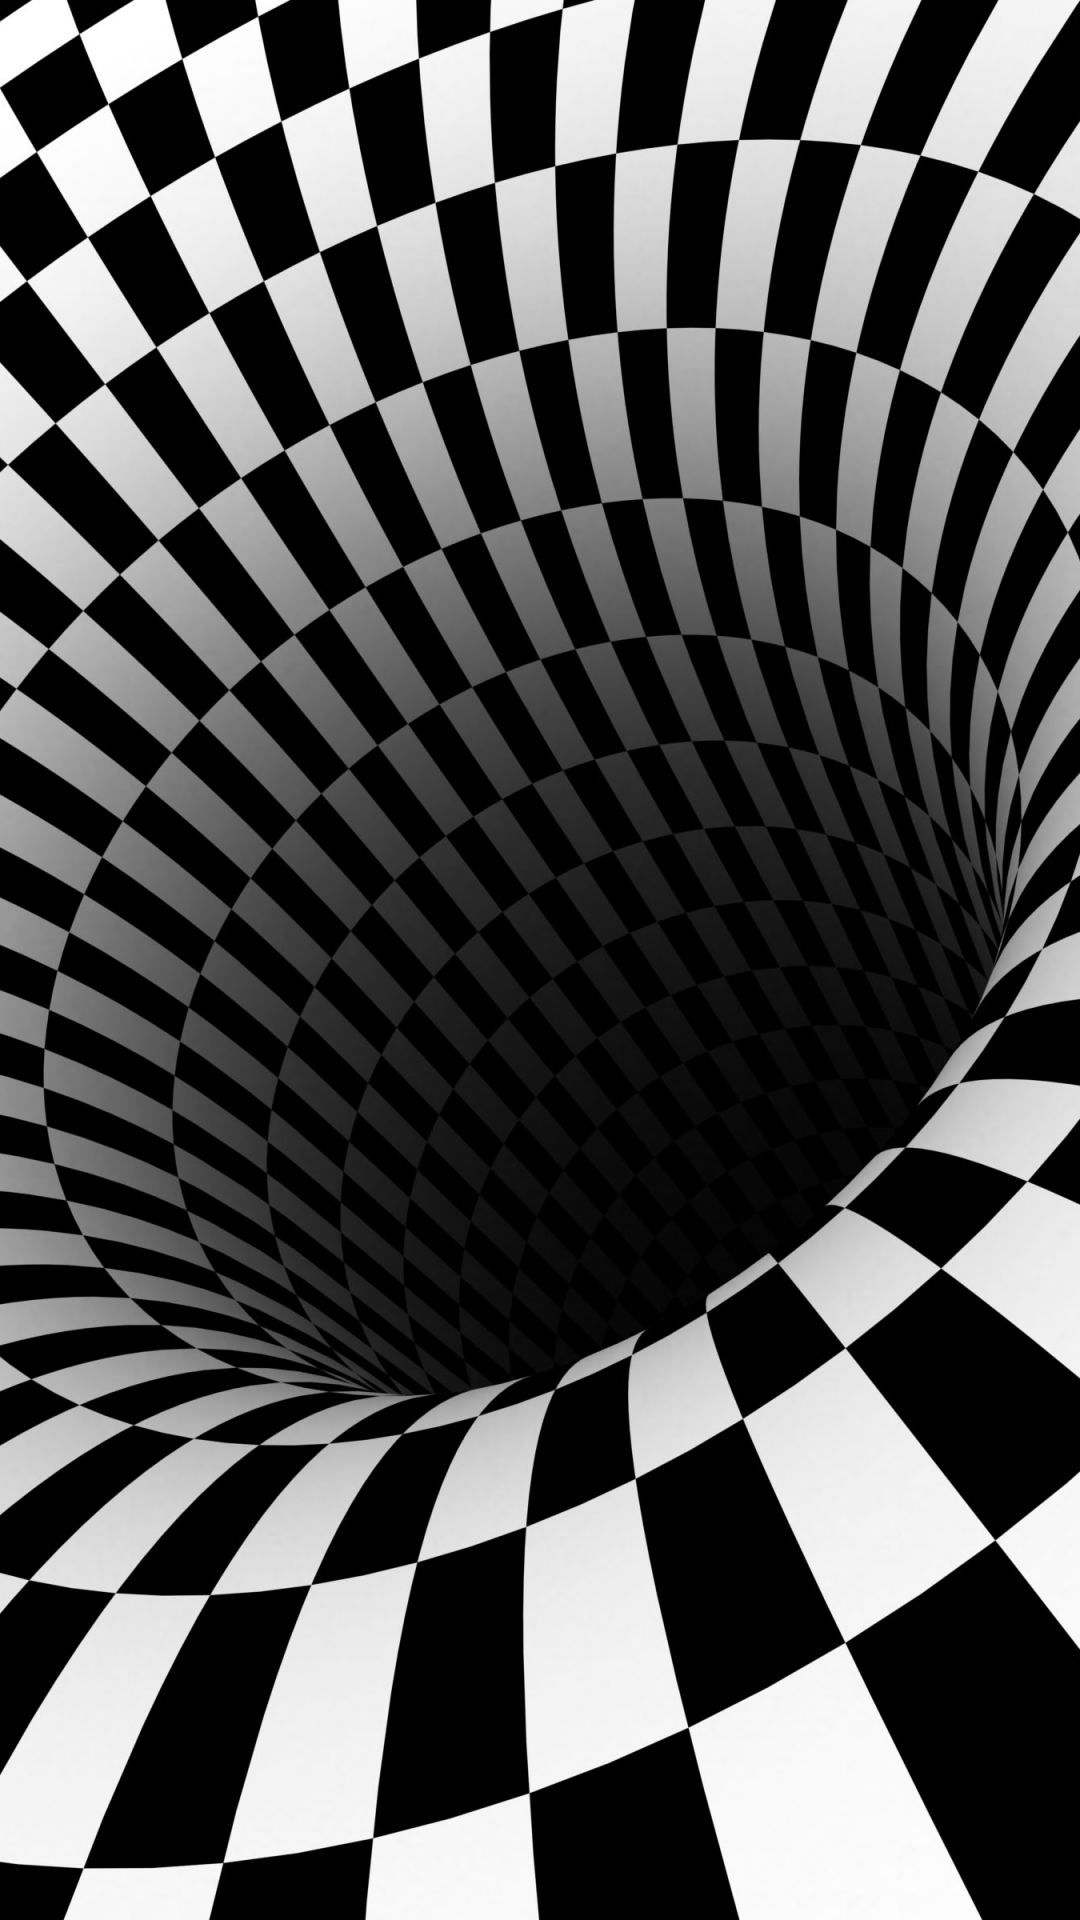 carta da parati commovente di illusione ottica,bianco e nero,nero,fotografia in bianco e nero,monocromatico,modello